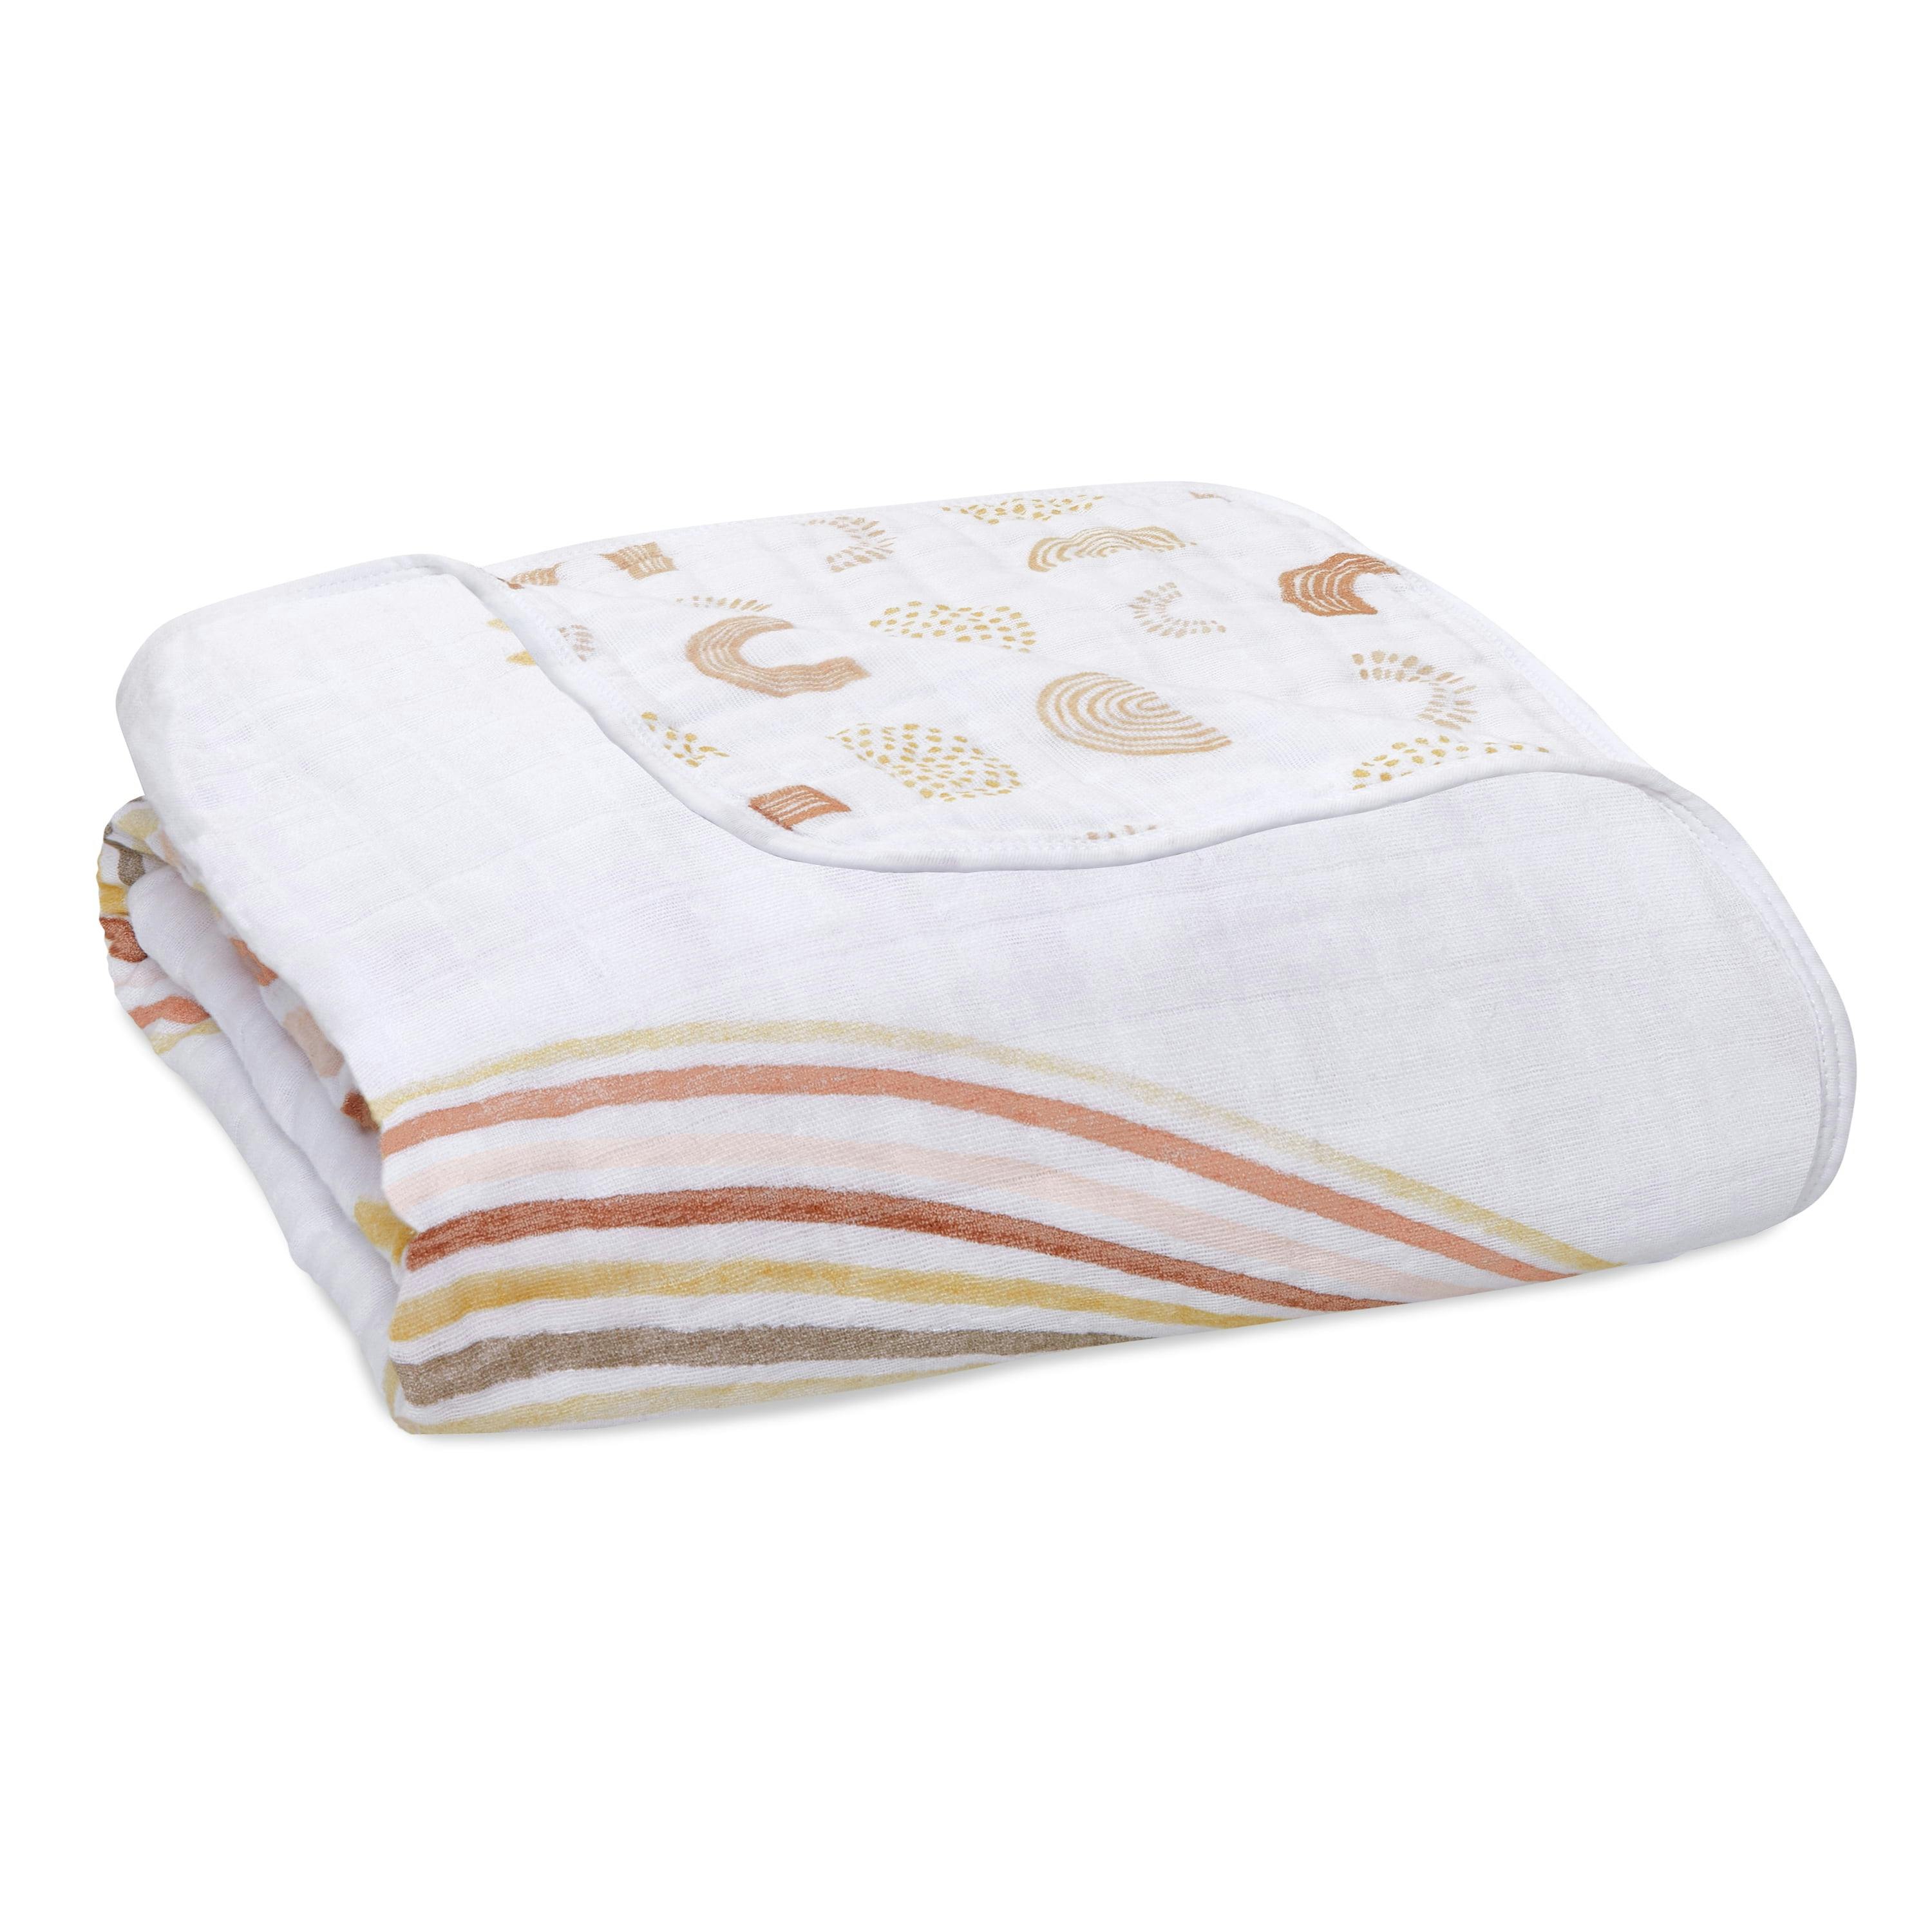 Dreamy Cotton Muslin Reversible Baby Blanket in Tan